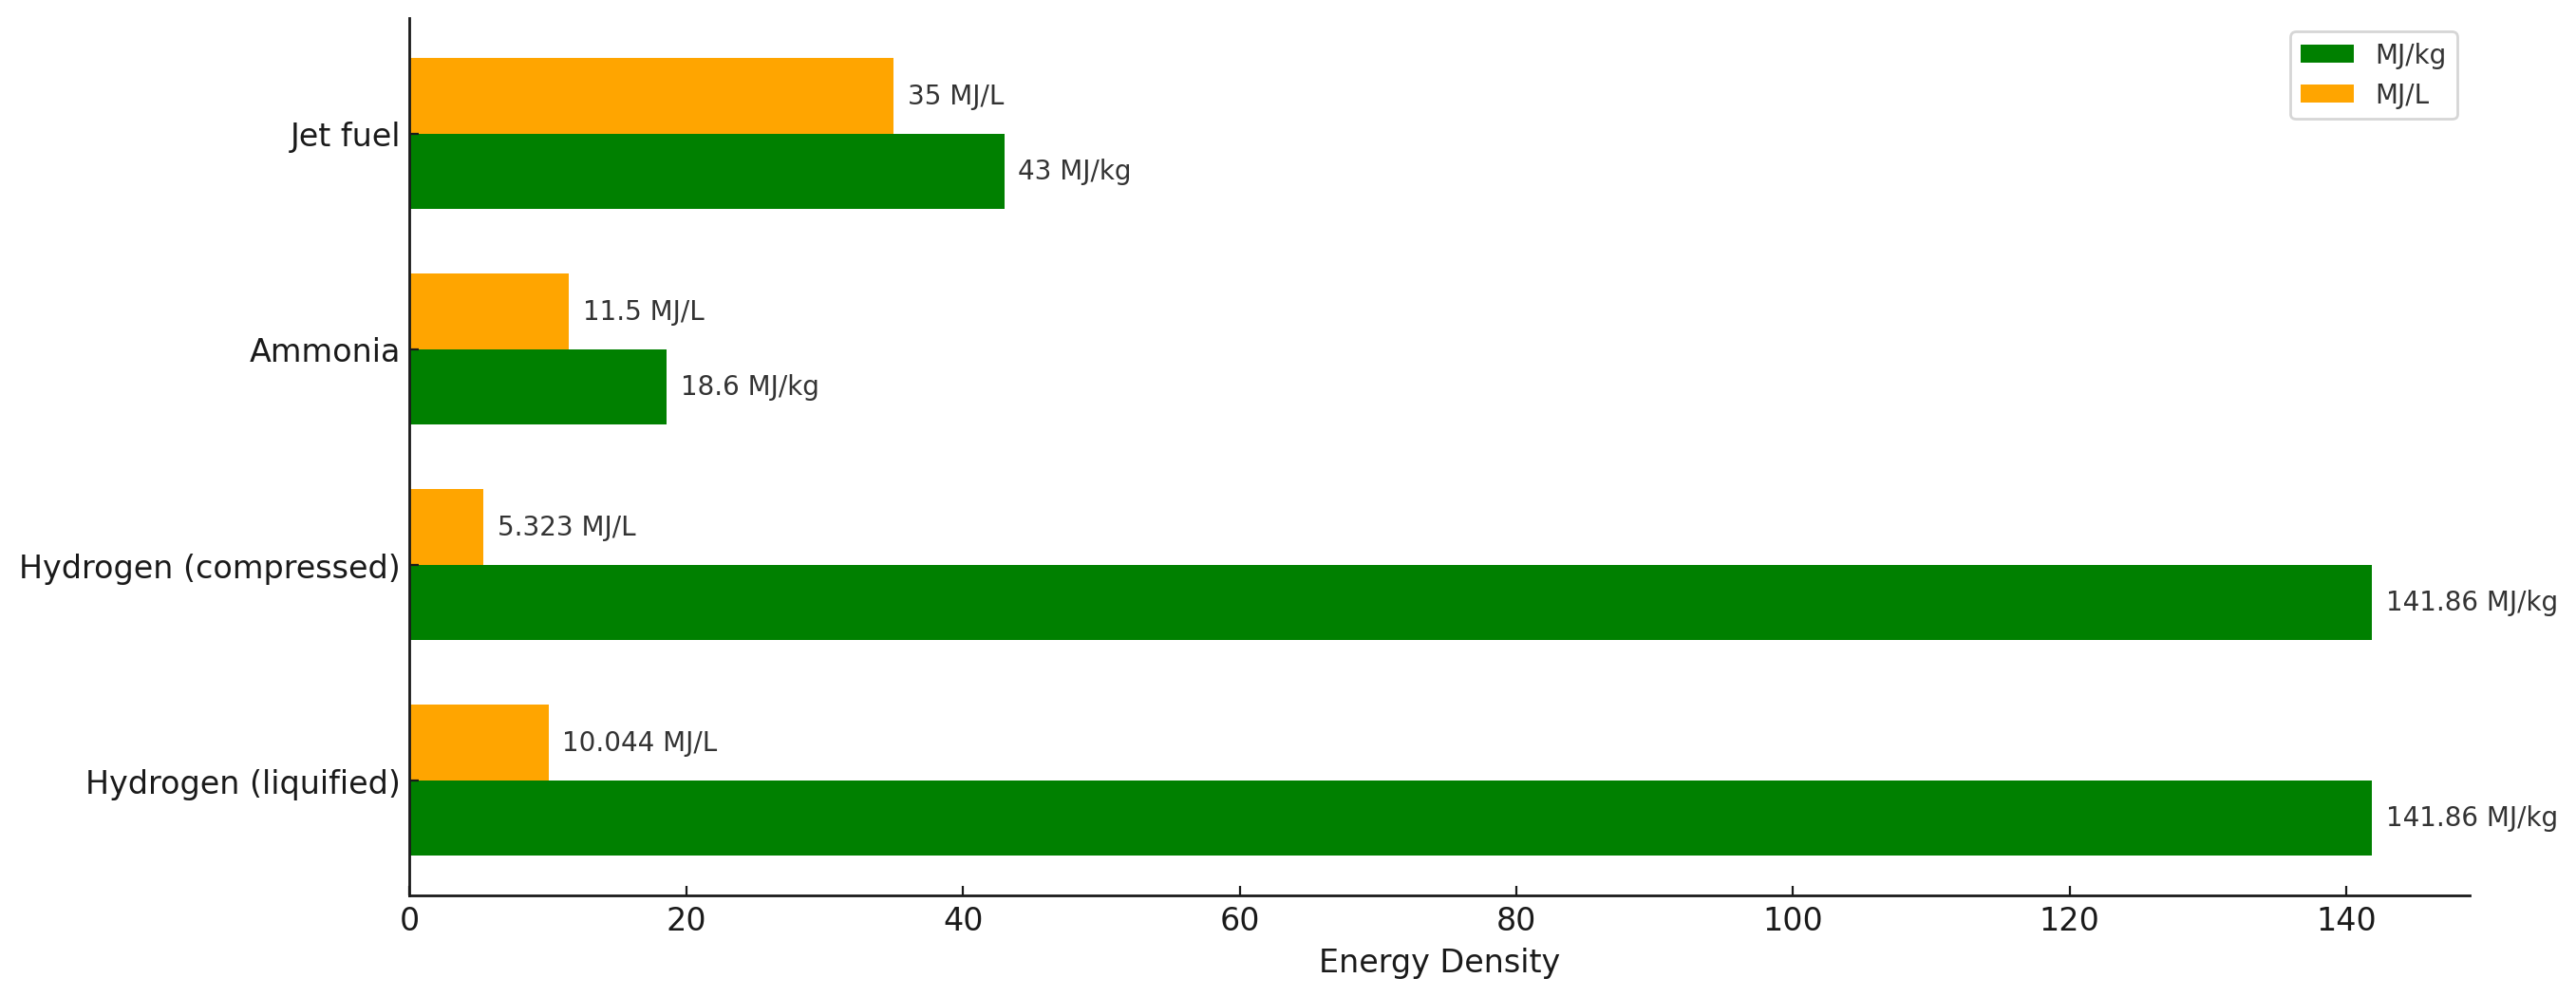 Bar chart of fuel energy density. Hydrogen (liquified):  141.86 MJ/kg, 10.044 MJ/L Hydrogen (compressed): 141.86 MJ/kg, 5.323 MJ/L Ammonia: 18.6MJ/kg, 11.5 MJ/L Jet fuel: 43 MJ/kg, 35 MJ/L